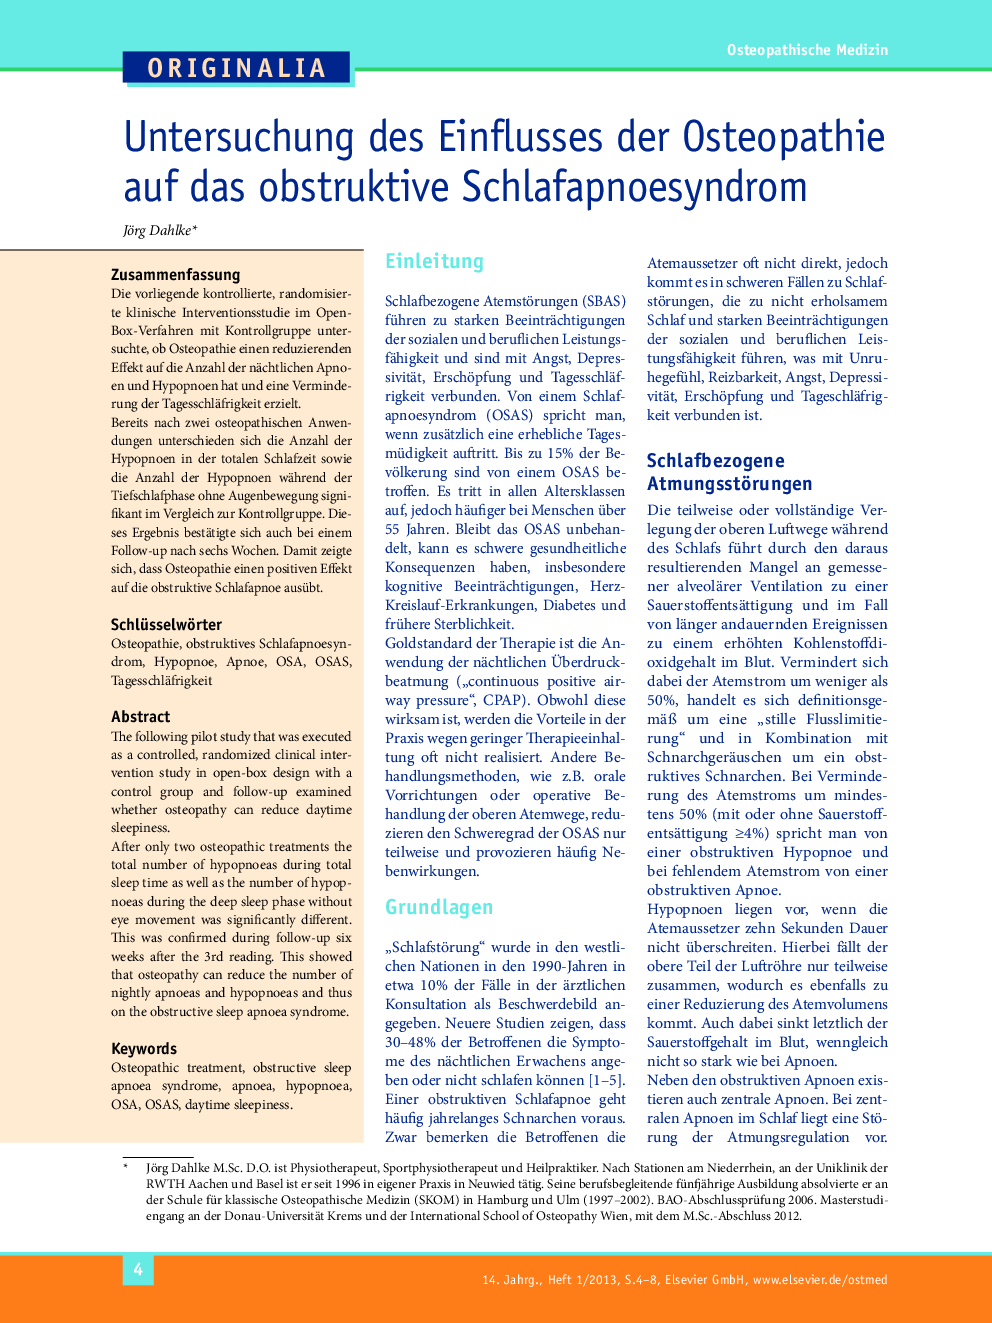 Untersuchung des Einflusses der Osteopathie auf das obstruktive Schlafapnoesyndrom